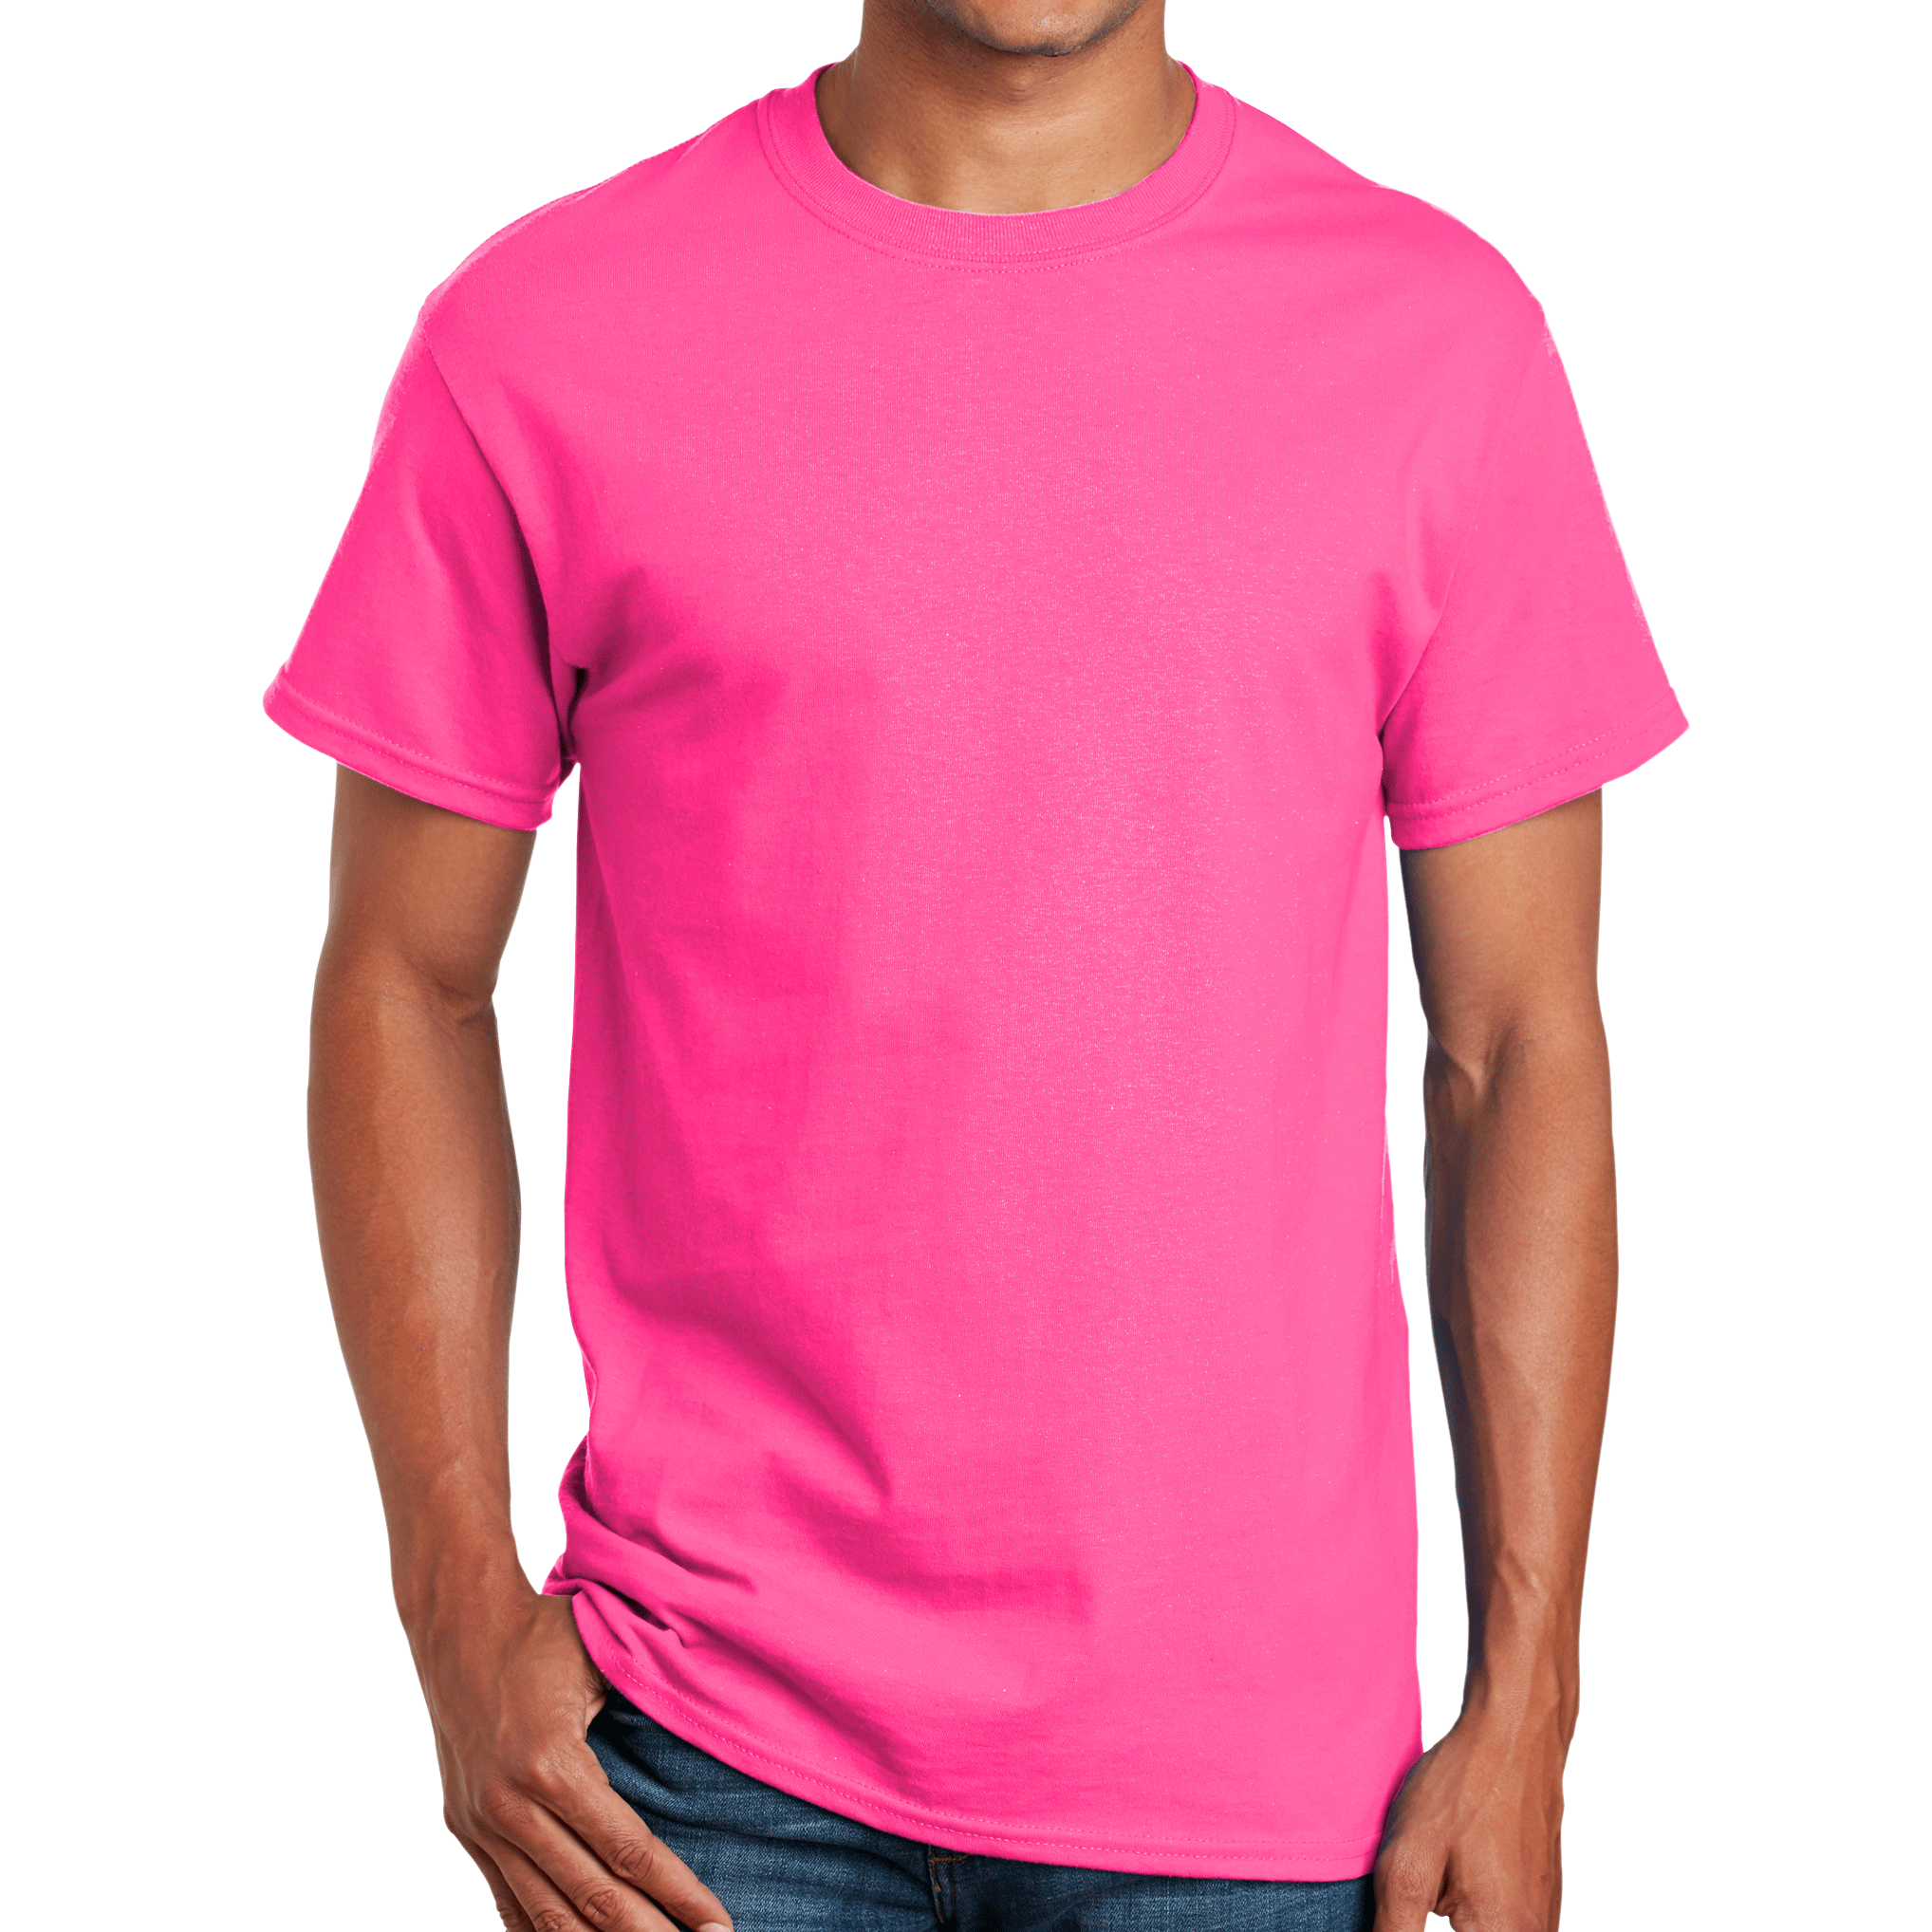 DOT NYC Cotton T-Shirt – Youth Fanatics Gear